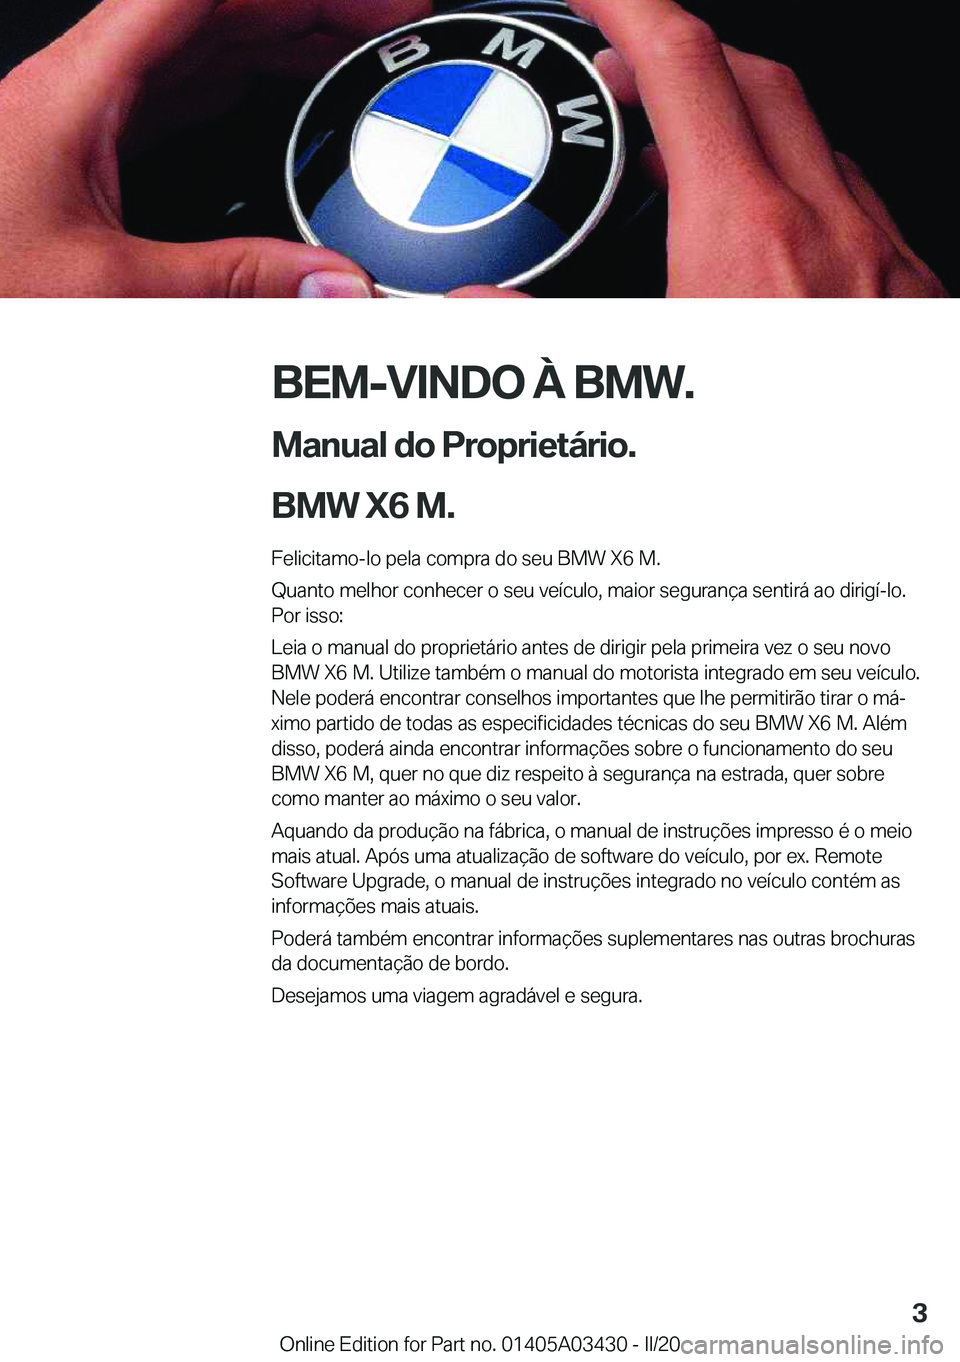 BMW X6 M 2020  Manual do condutor (in Portuguese) �B�E�M�-�V�I�N�D�O��À��B�M�W�.
�M�a�n�u�a�l��d�o��P�r�o�p�r�i�e�t�á�r�i�o�.
�B�M�W��X�6��M�. �F�e�l�i�c�i�t�a�m�o�-�l�o��p�e�l�a��c�o�m�p�r�a��d�o��s�e�u��B�M�W��X�6��M�.
�Q�u�a�n�t�o�